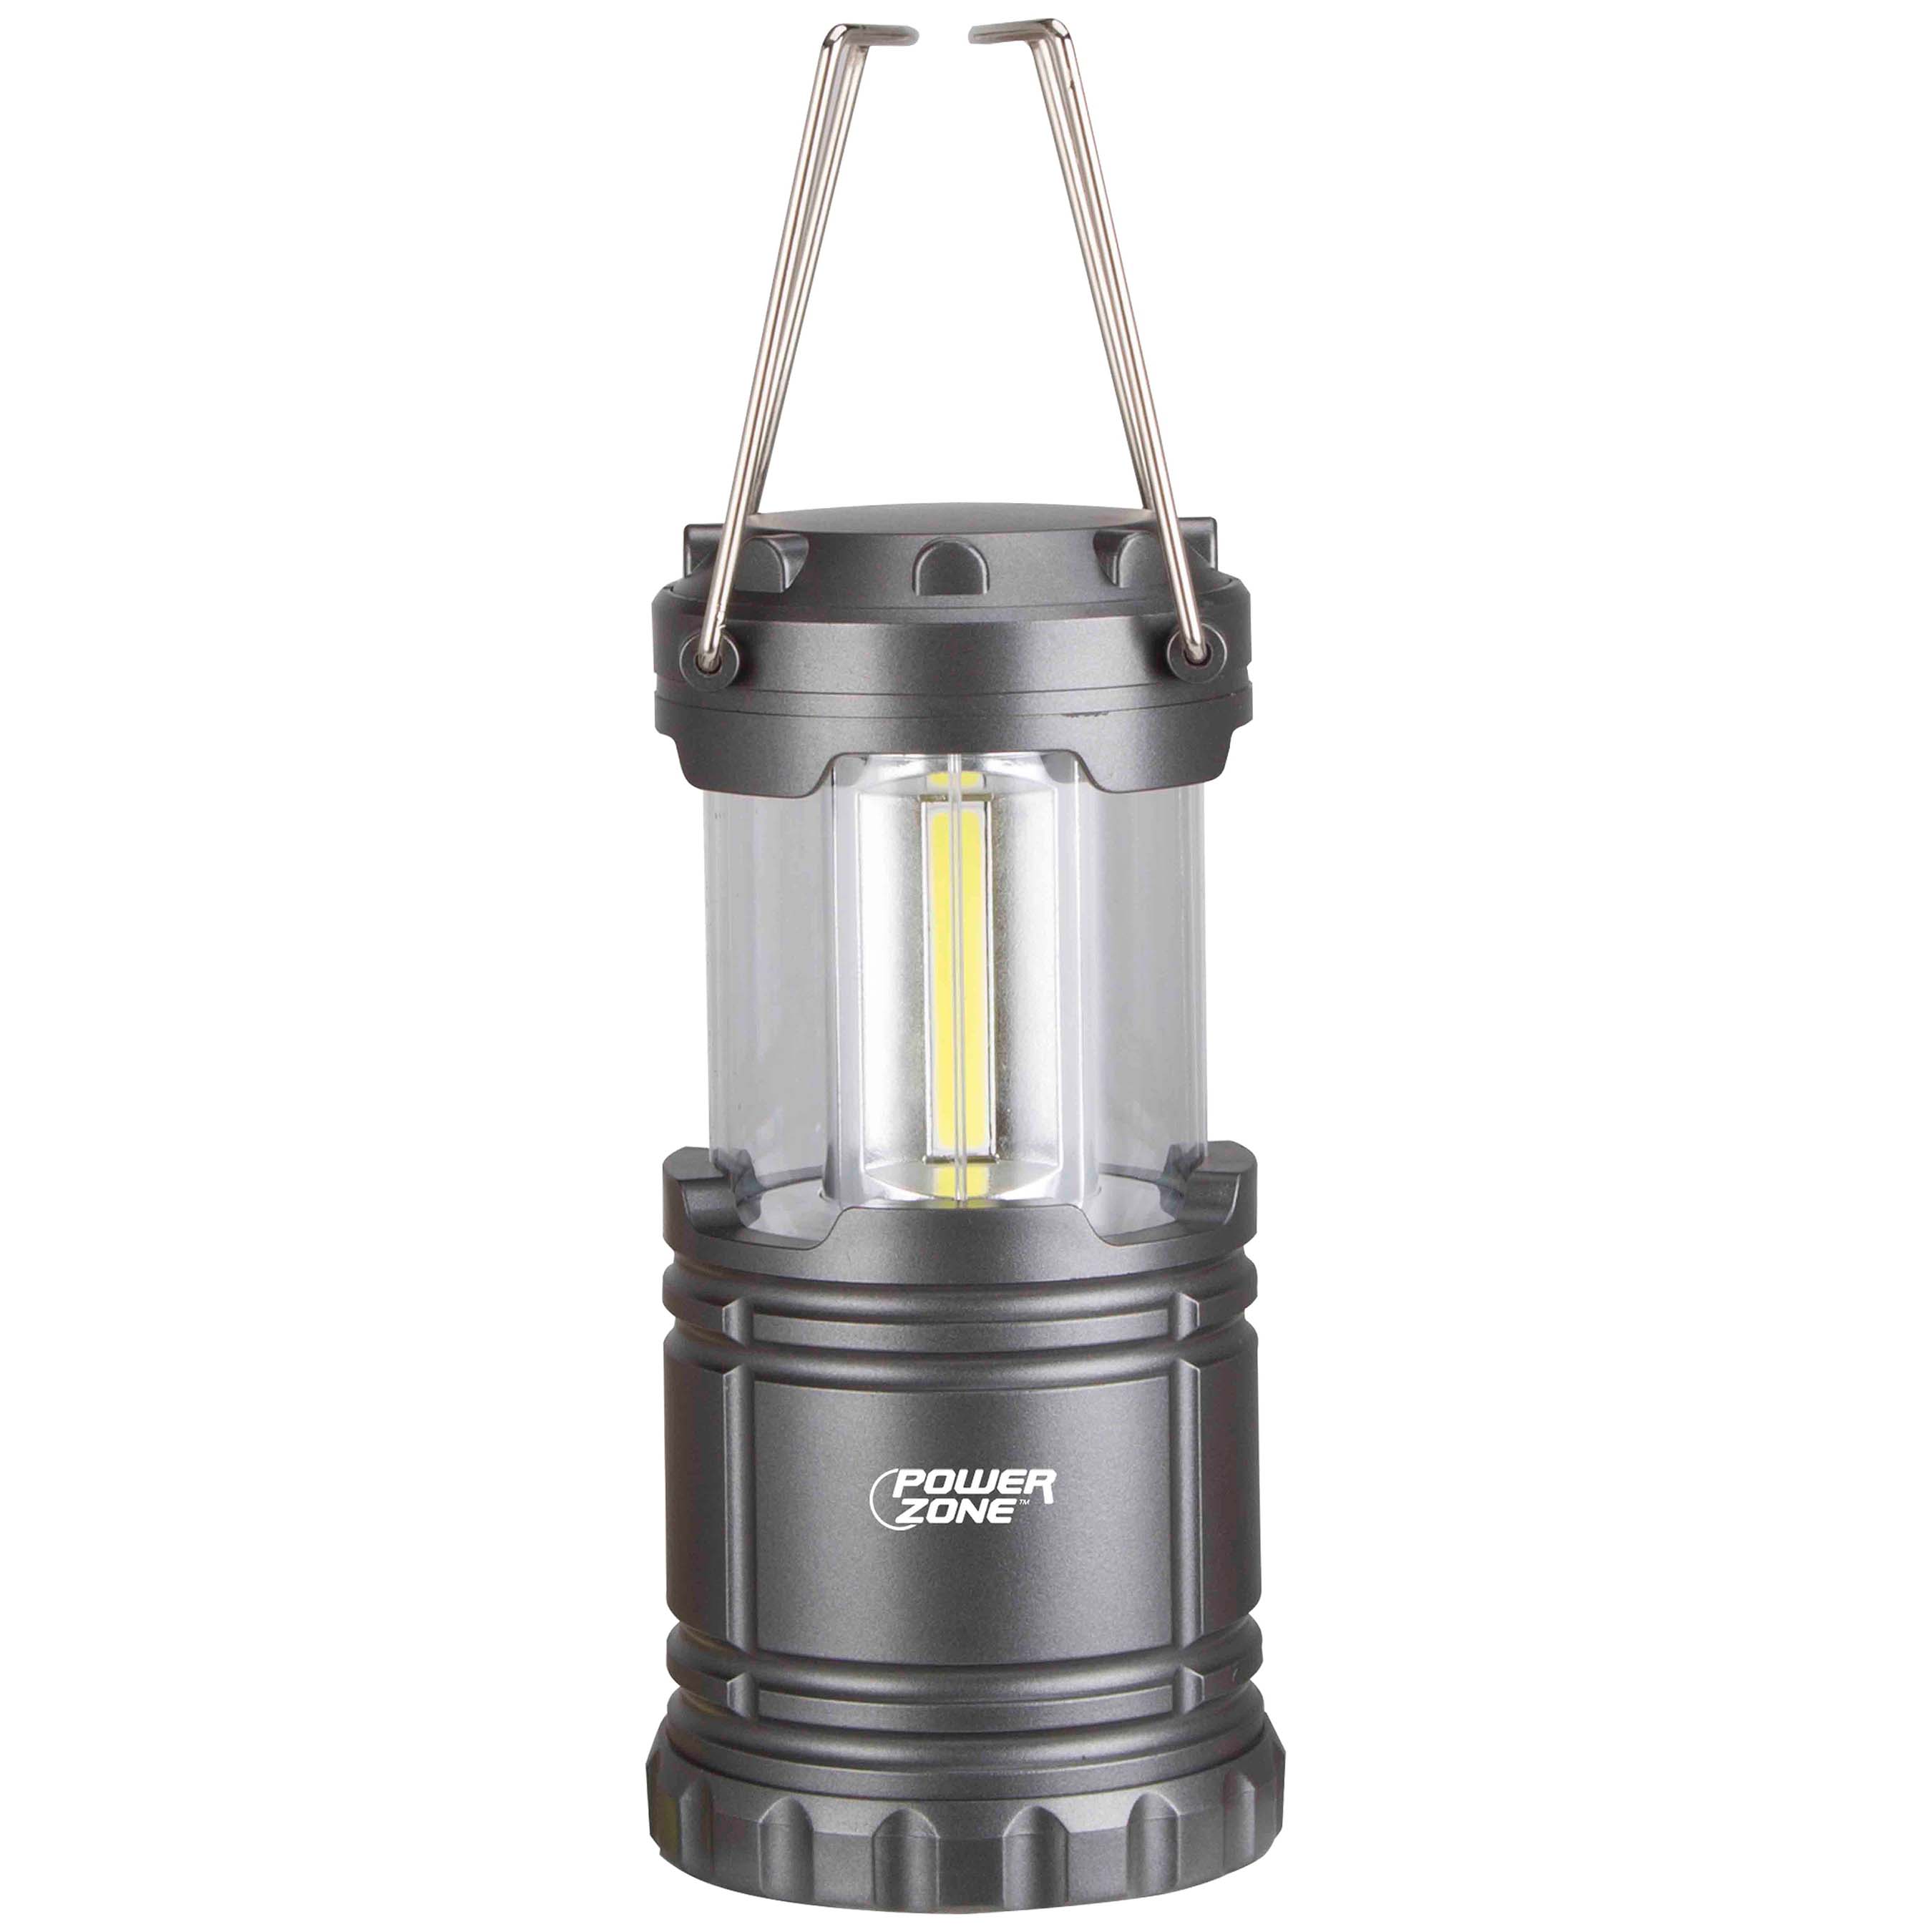 LP-6378-COB Collapsible Camping Lantern, LED Lamp, White Light, ABS, Silvery Black Gun-Metal Finish